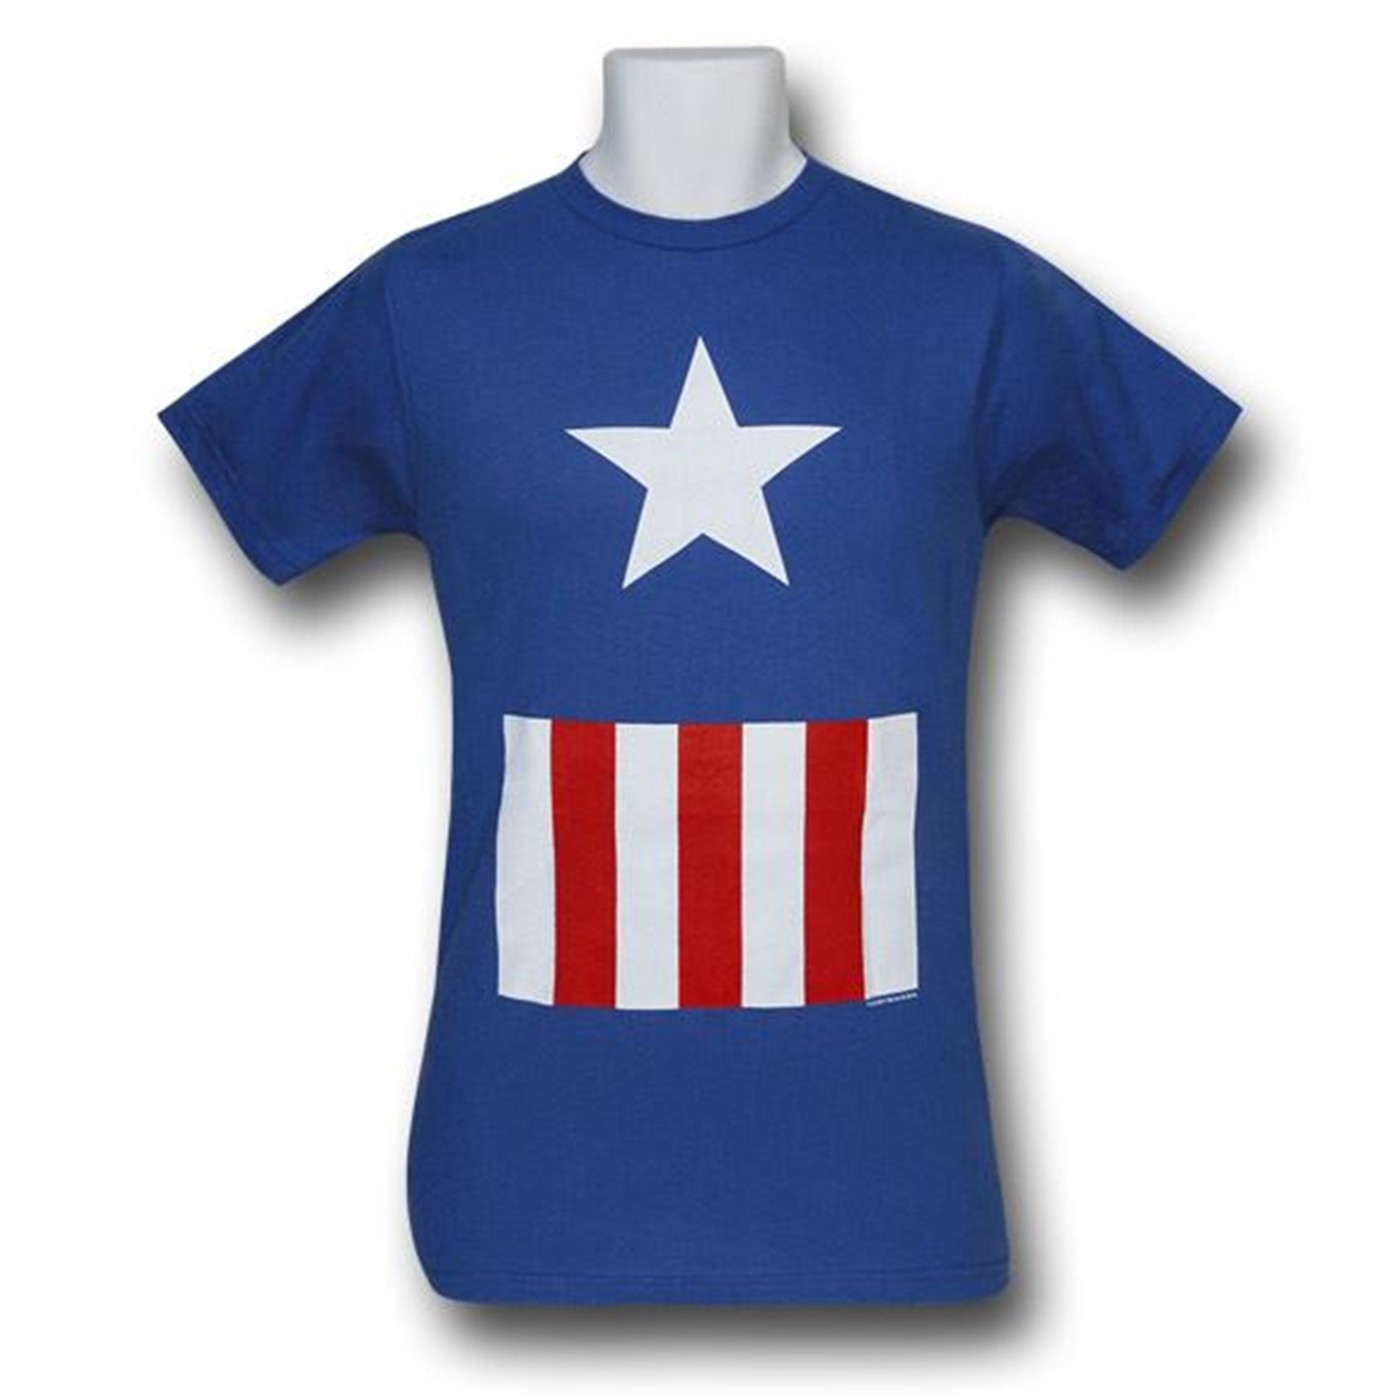 Captain America Classic Costume T-Shirt